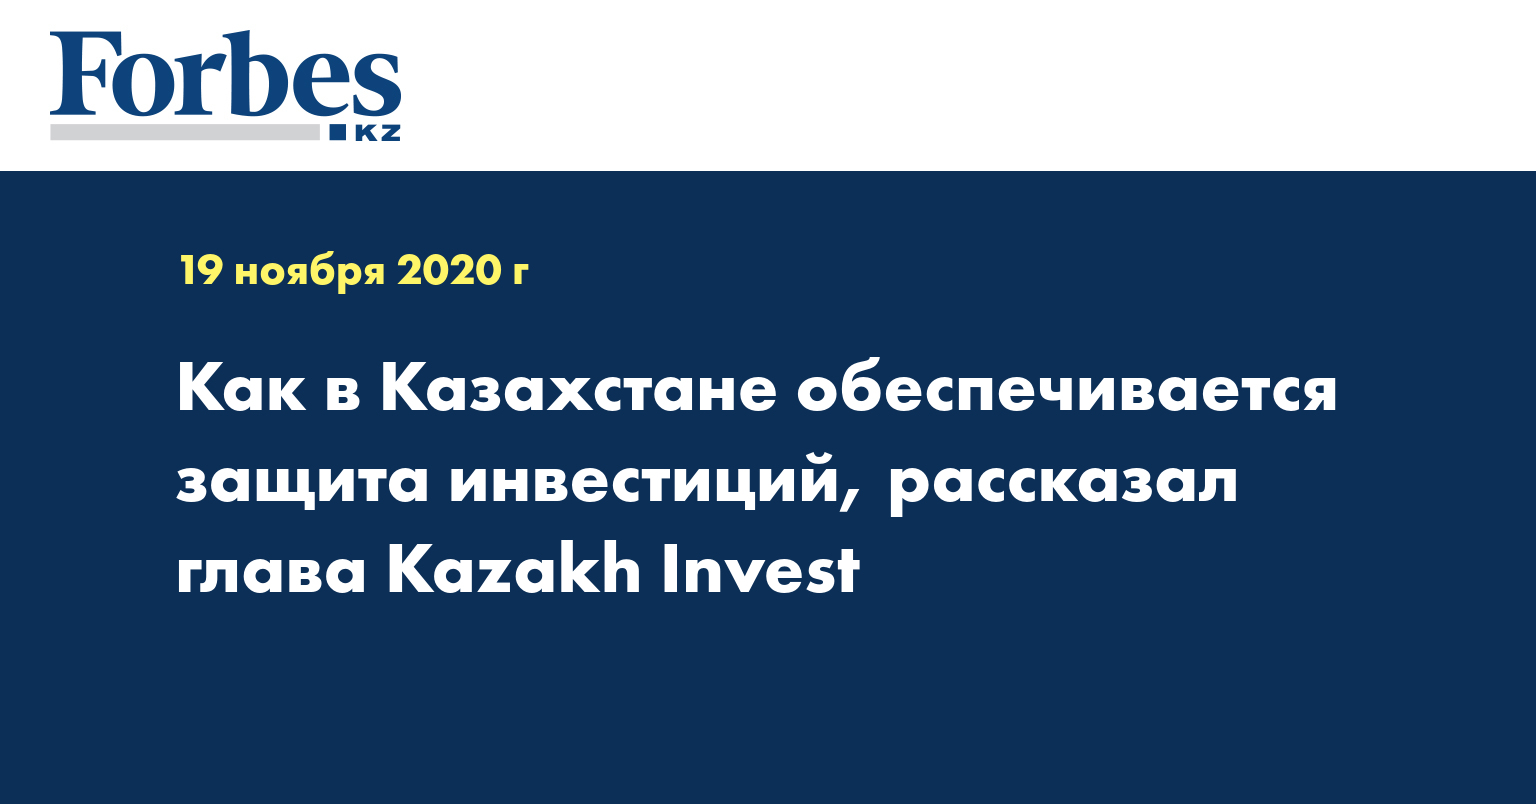  Как в Казахстане обеспечивается защита инвестиций, рассказал глава Kazakh Invest